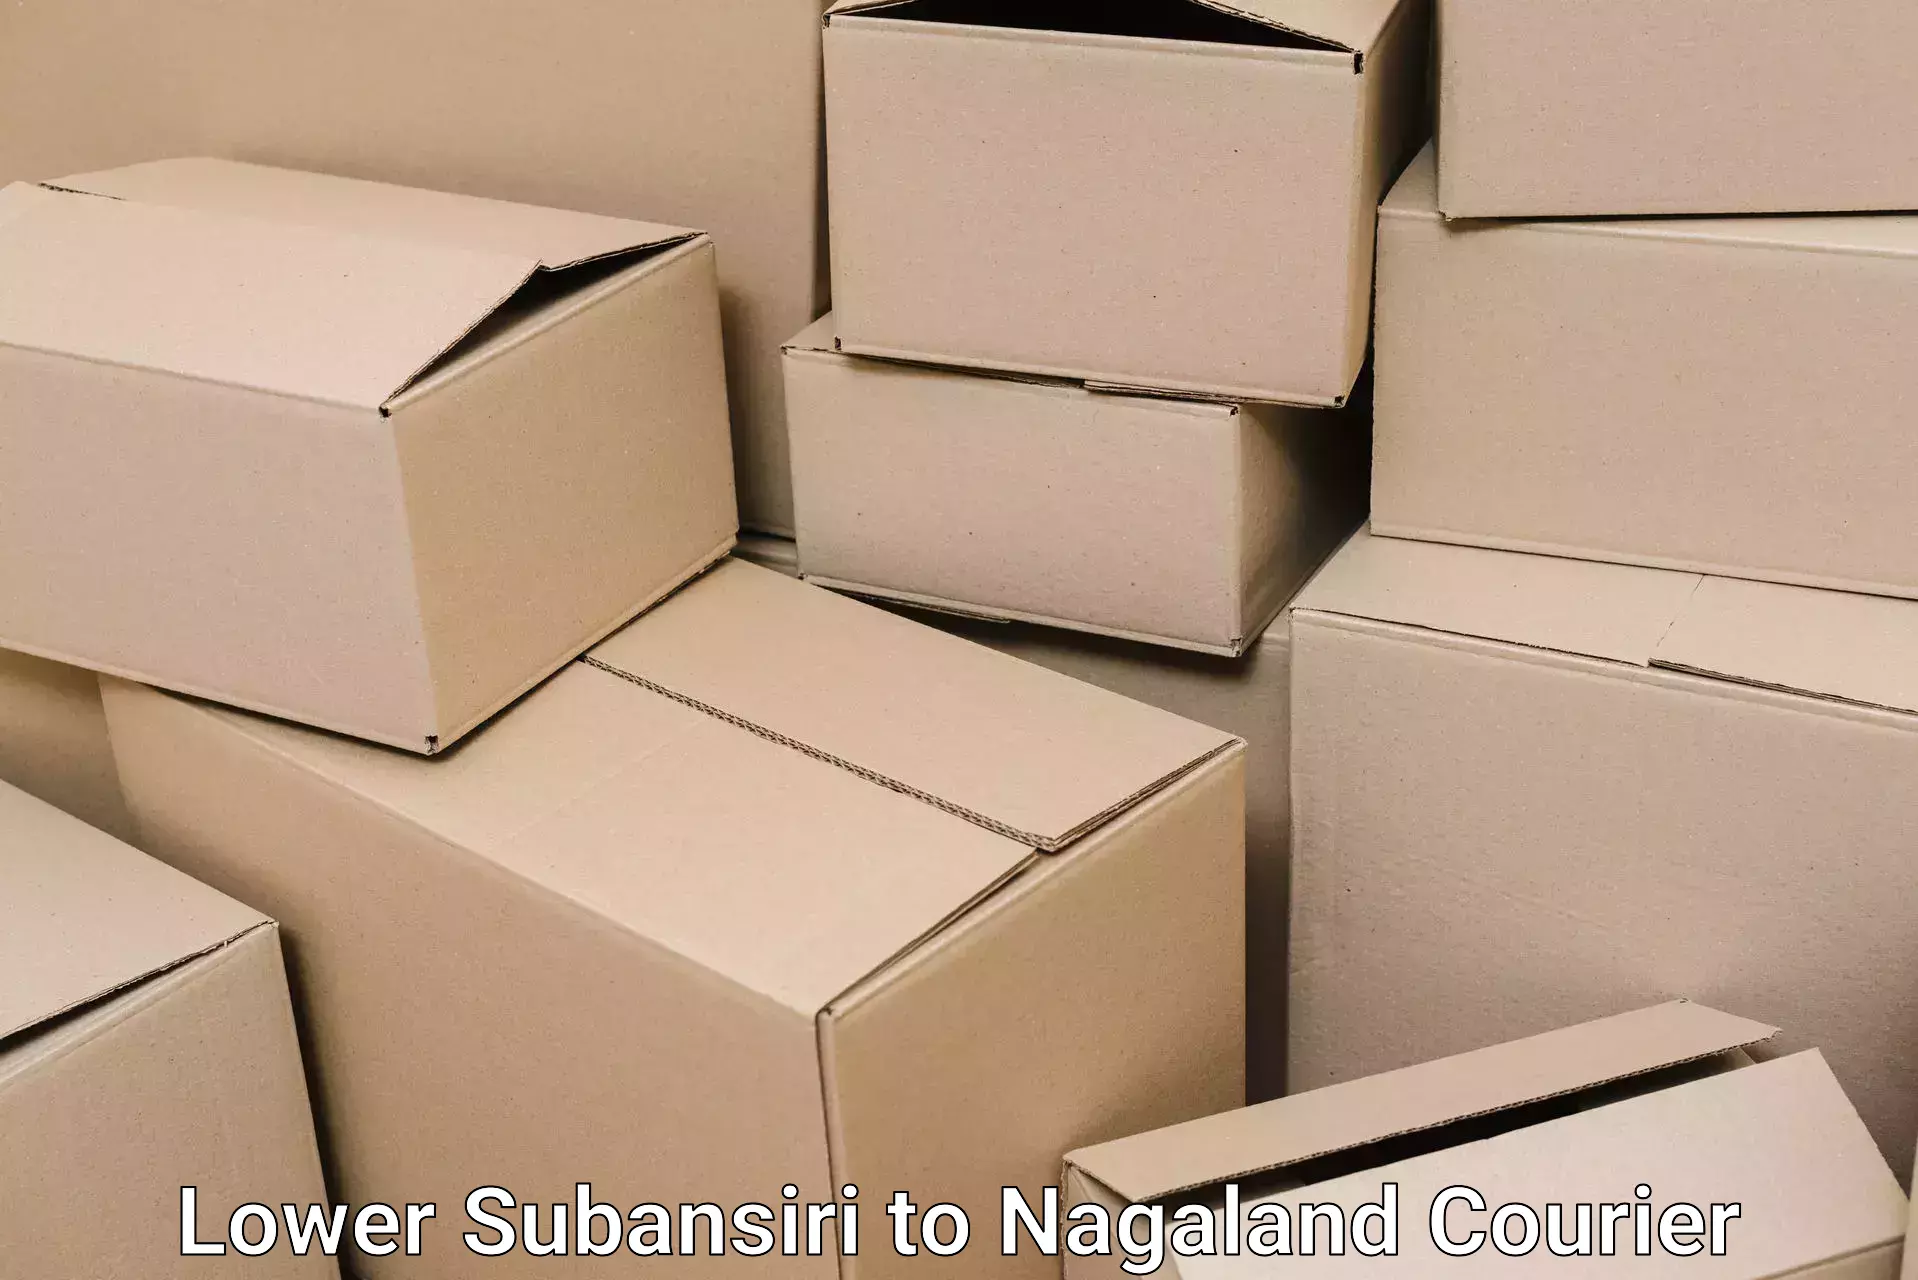 Household goods movers and packers Lower Subansiri to Chumukedima